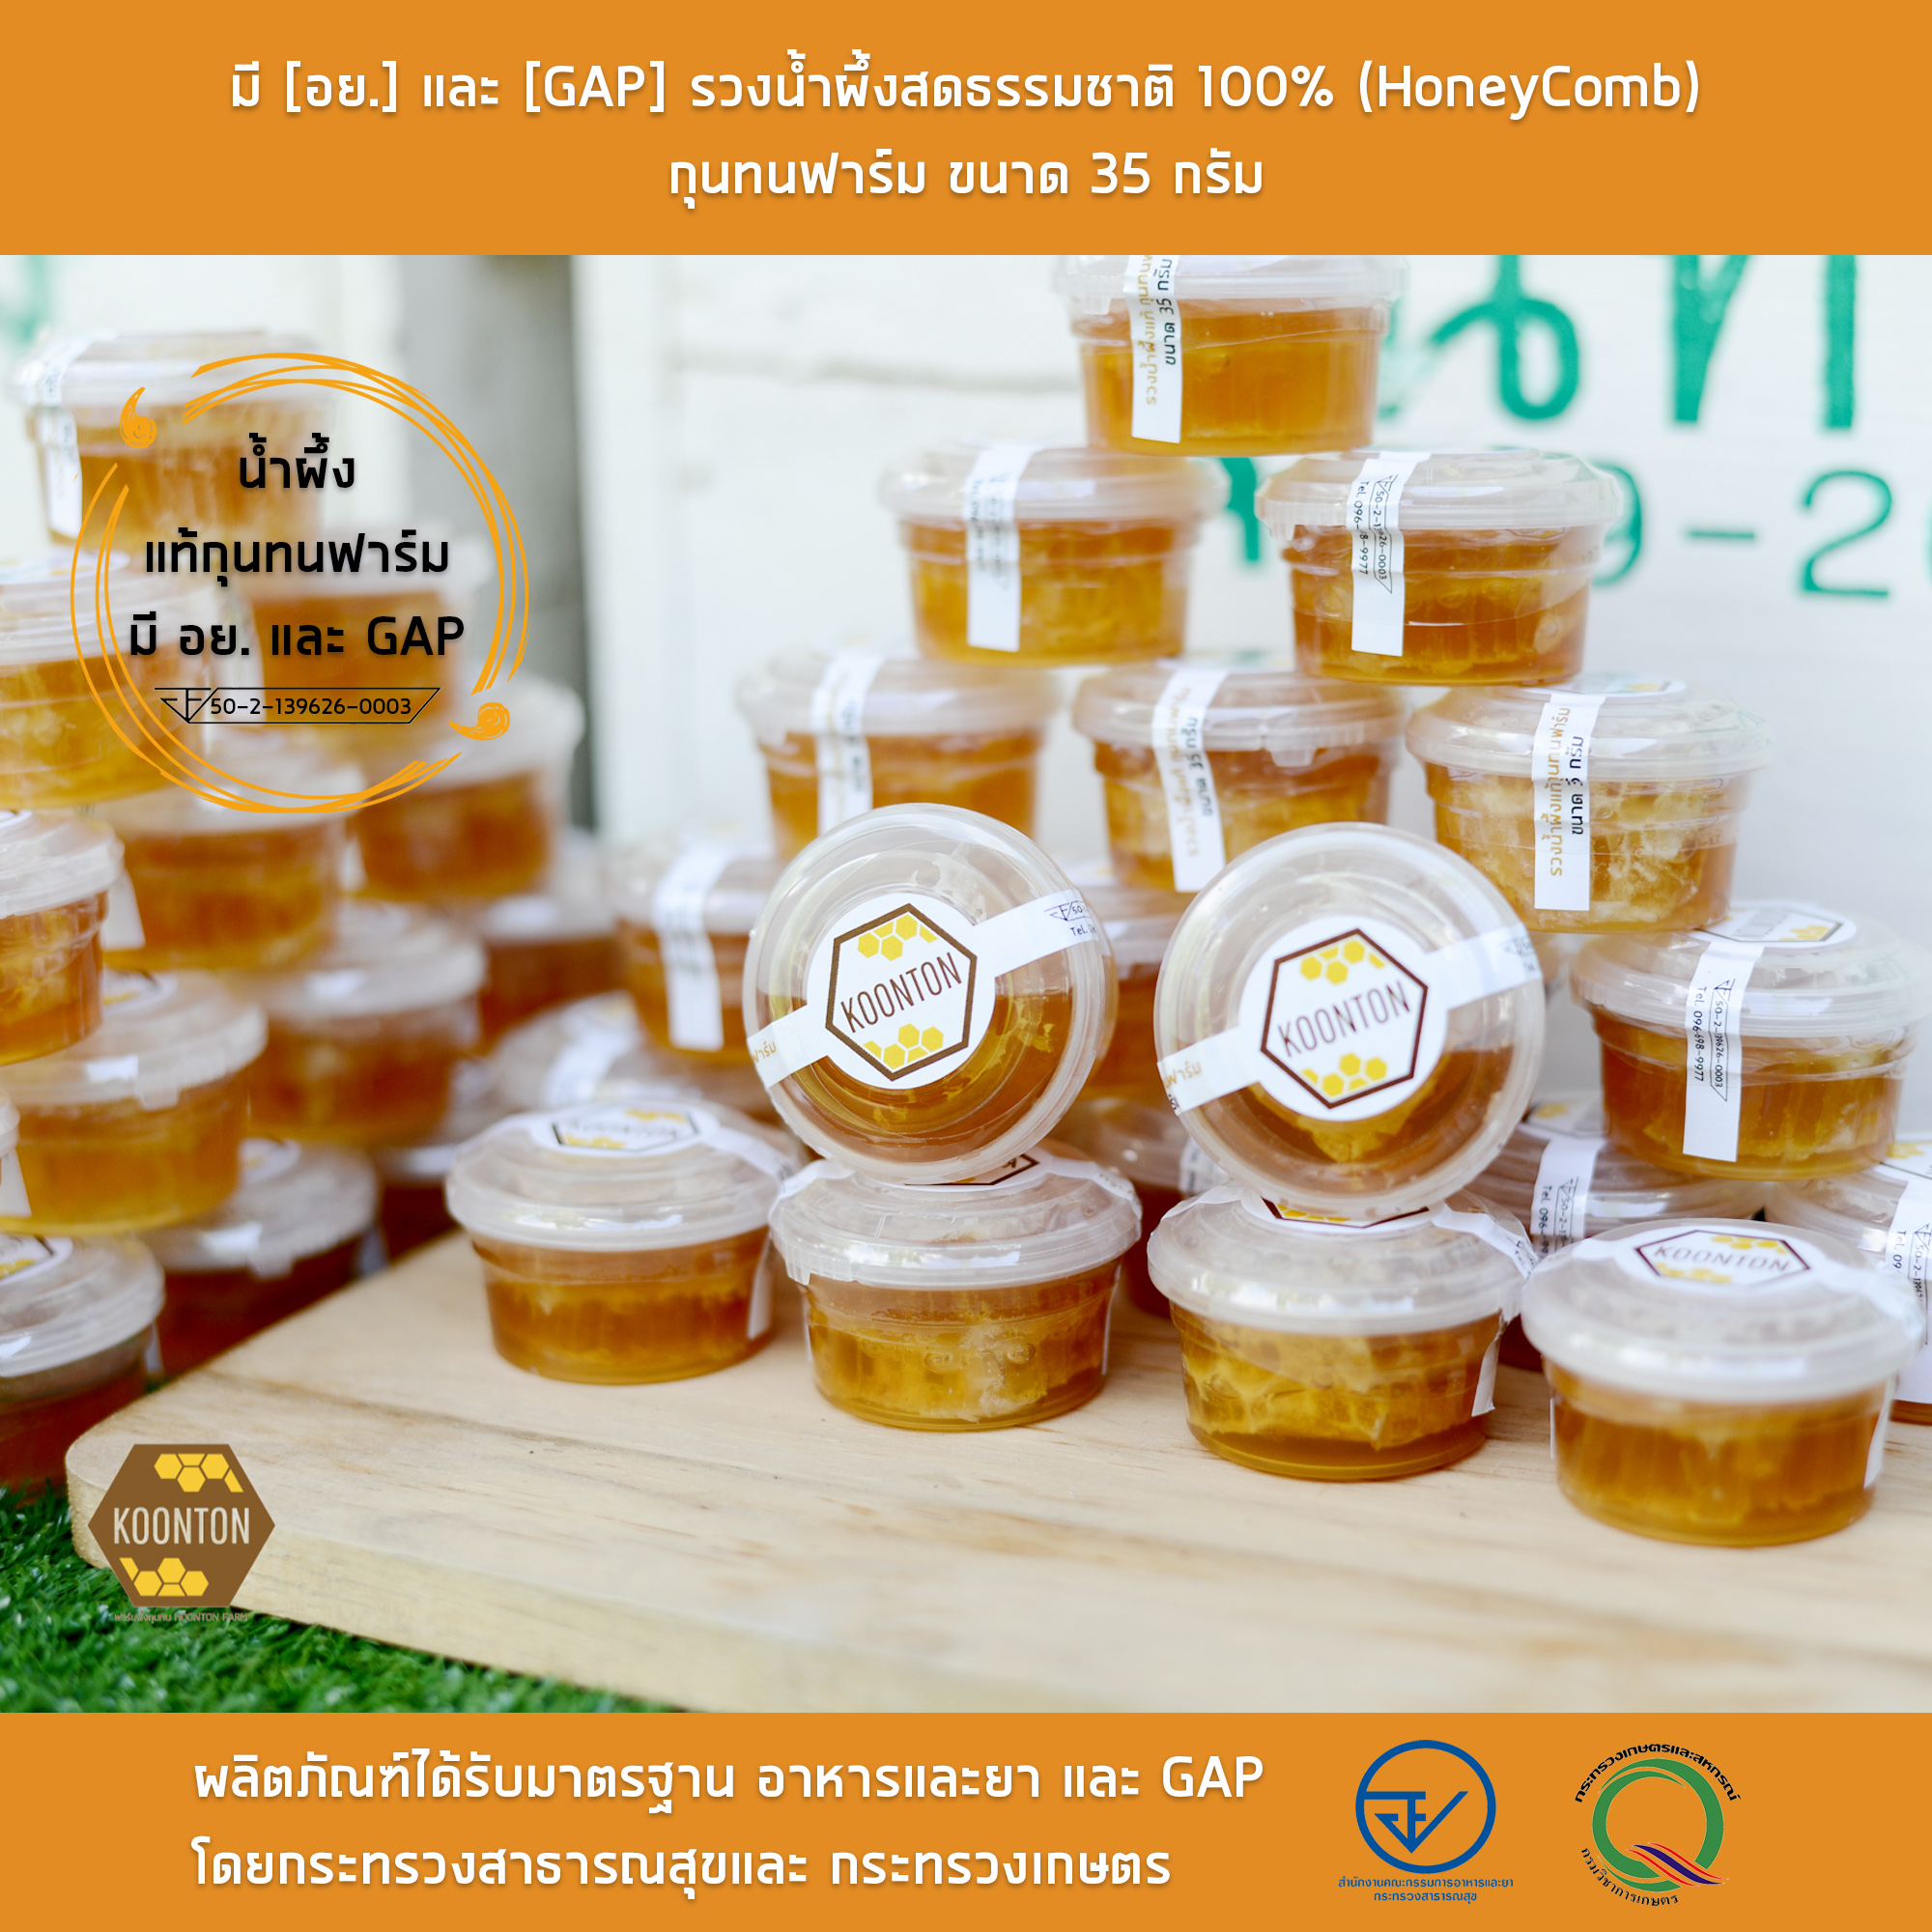 รวงผึ้ง ขนาด 35 กรัม มี [อย.] และ [GAP] รวงน้ำผึ้งสดธรรมชาติ 100% (HoneyComb) กุนทนฟาร์ม